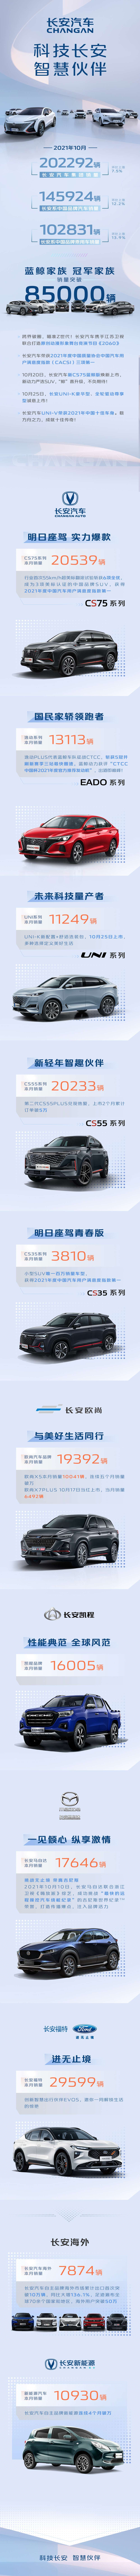 长安汽车10月销量 整体销售202292辆 CS55系列、CS75系列均破2万辆